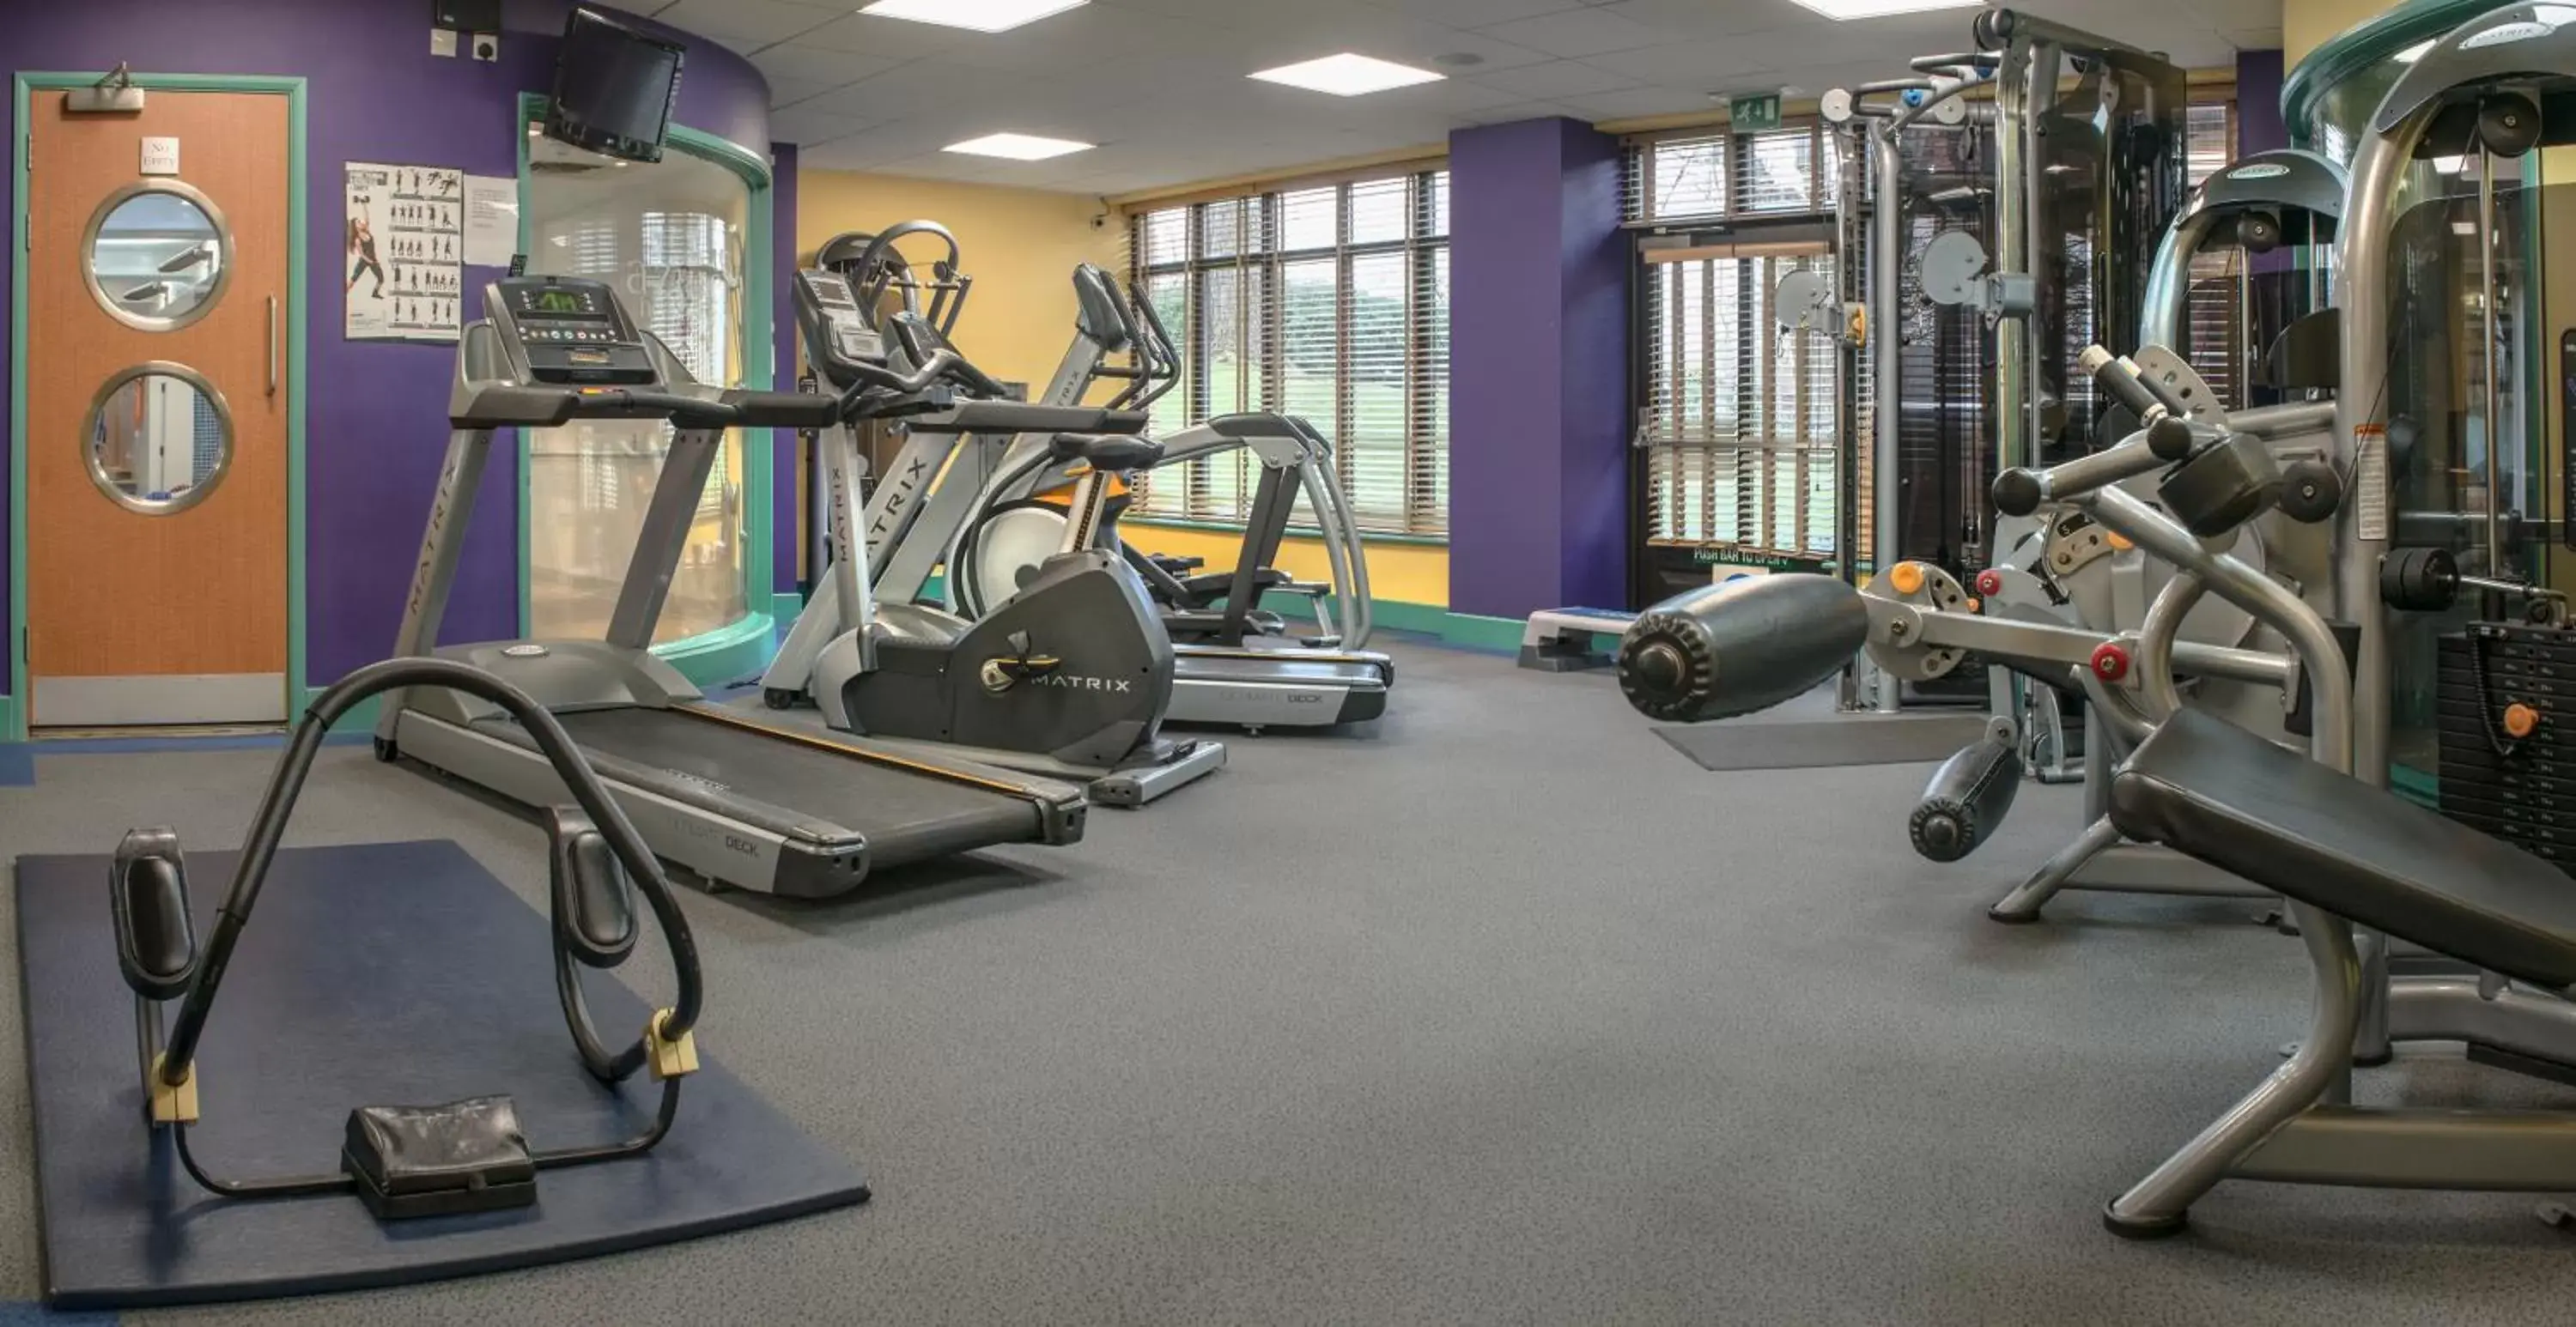 Fitness centre/facilities in De Vere Latimer Estate